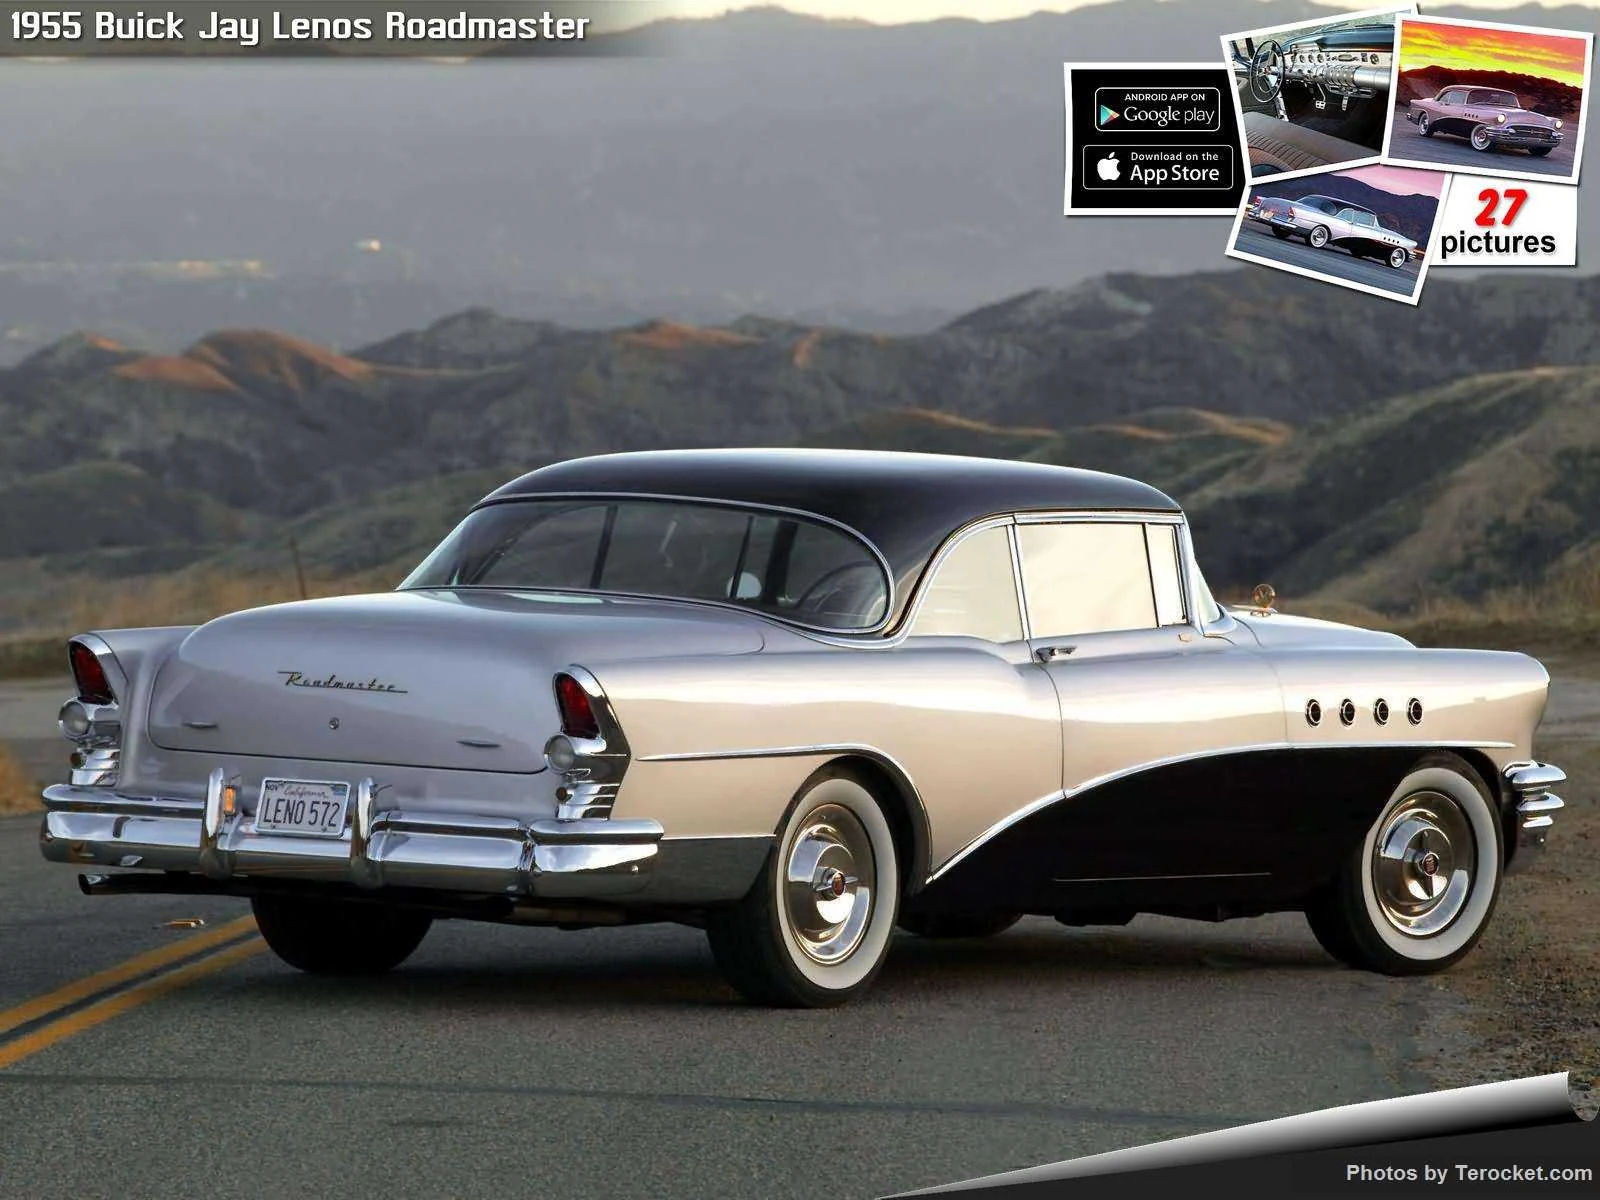 Hình ảnh xe ô tô Buick Jay Lenos Roadmaster 1955 & nội ngoại thất